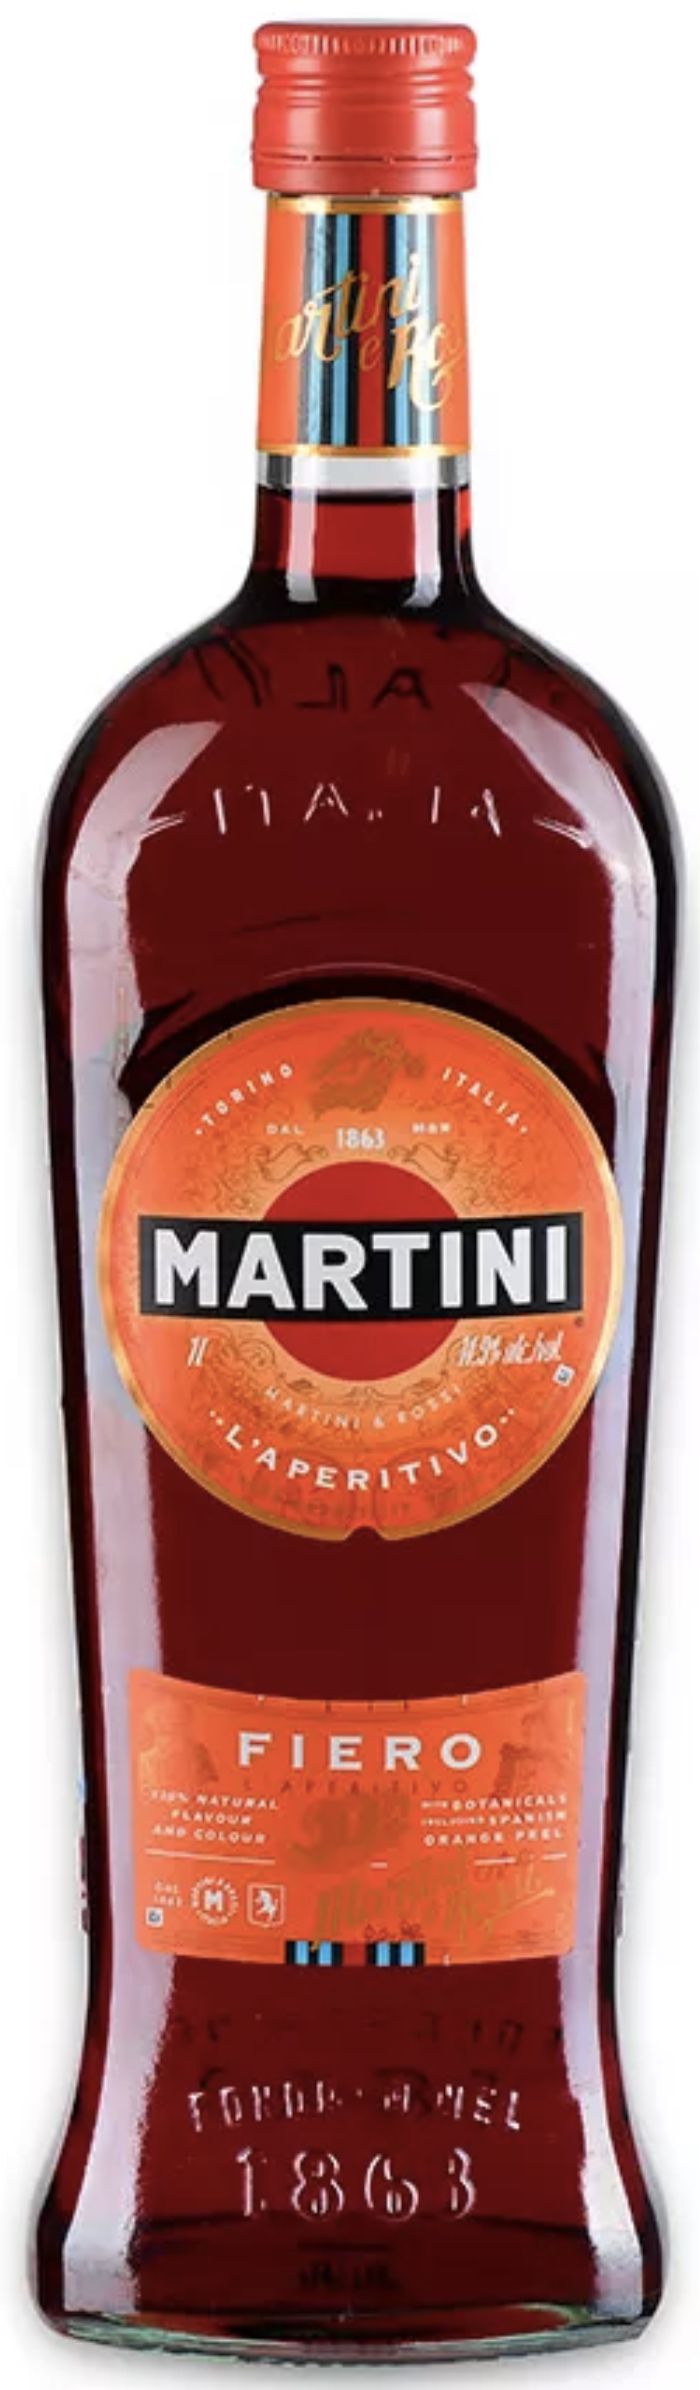 Ароматизированный виноградный напиток сладкий  Мартини Фиеро креп 14.9%, емк 1.0л.